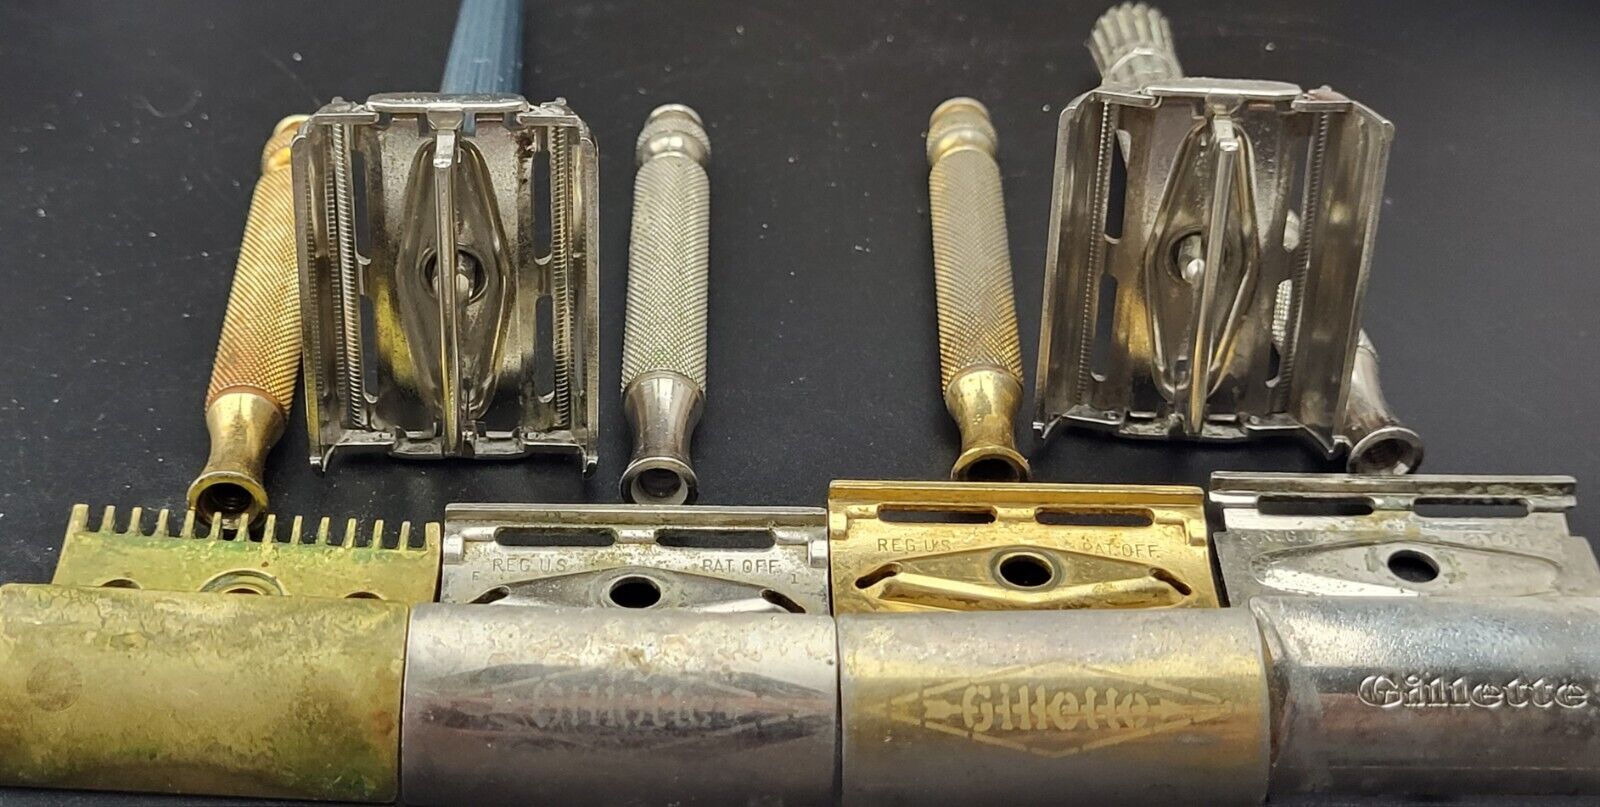 Lot of 6 Antique/Vintage Gillette Safety Razors 1900s-1960s